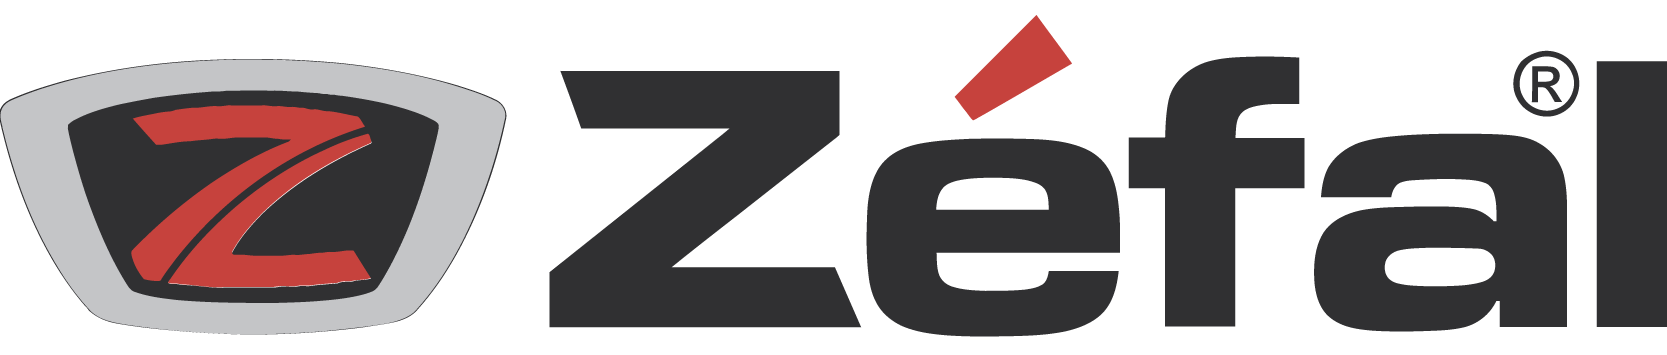 Logo Zéfal